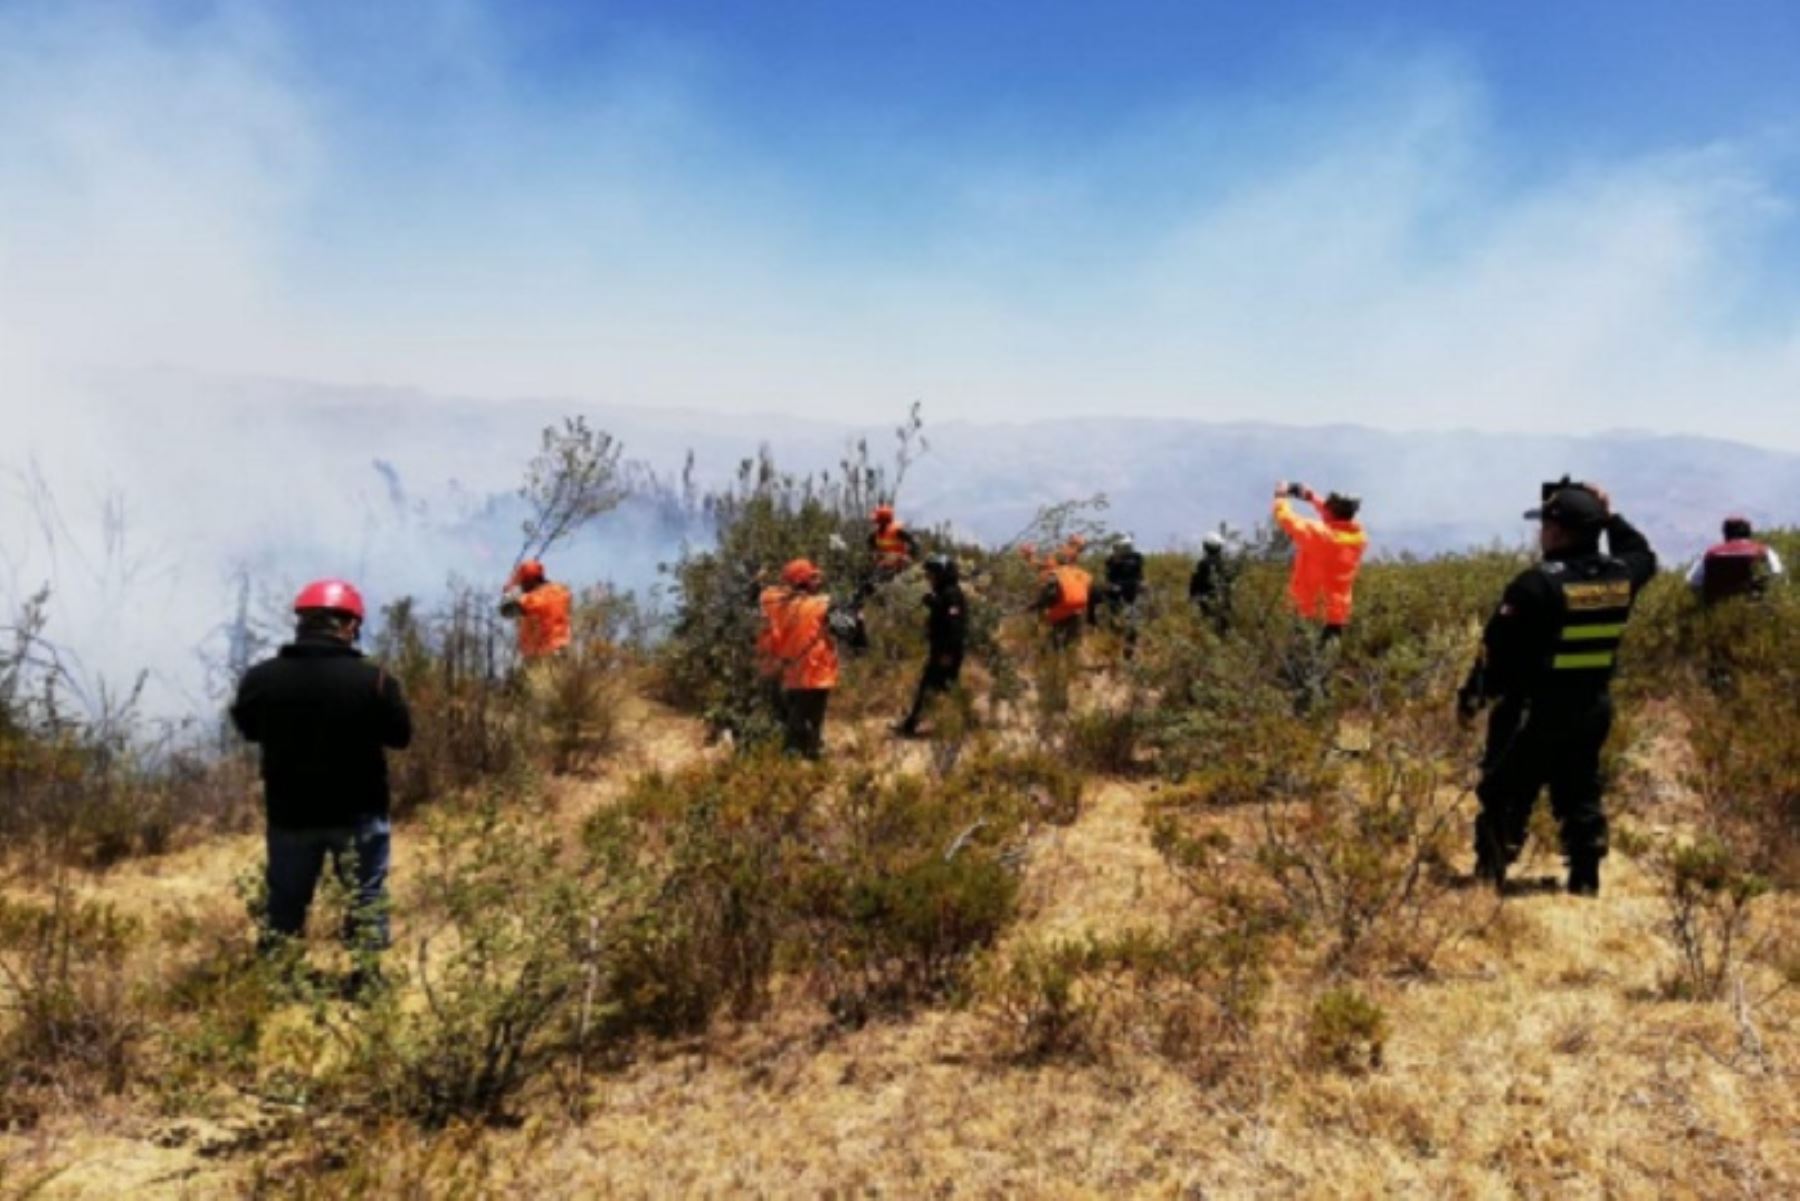 Reinician labores para extinguir incendio forestal en La Libertad